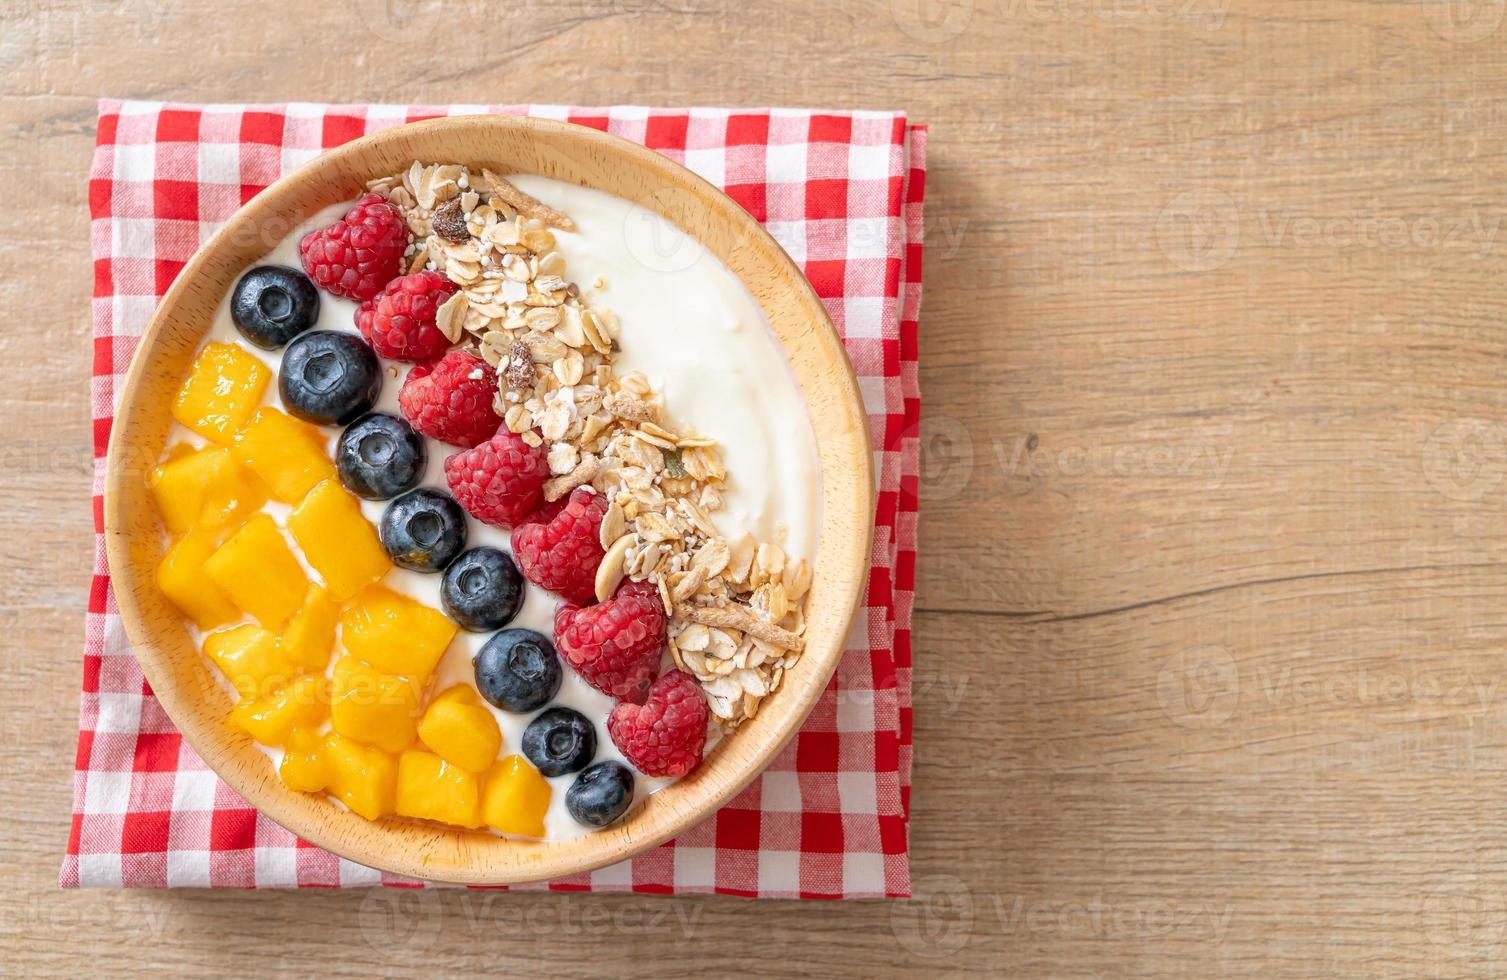 tigela de iogurte caseiro com framboesa, mirtilo, manga e granola - estilo de comida saudável foto